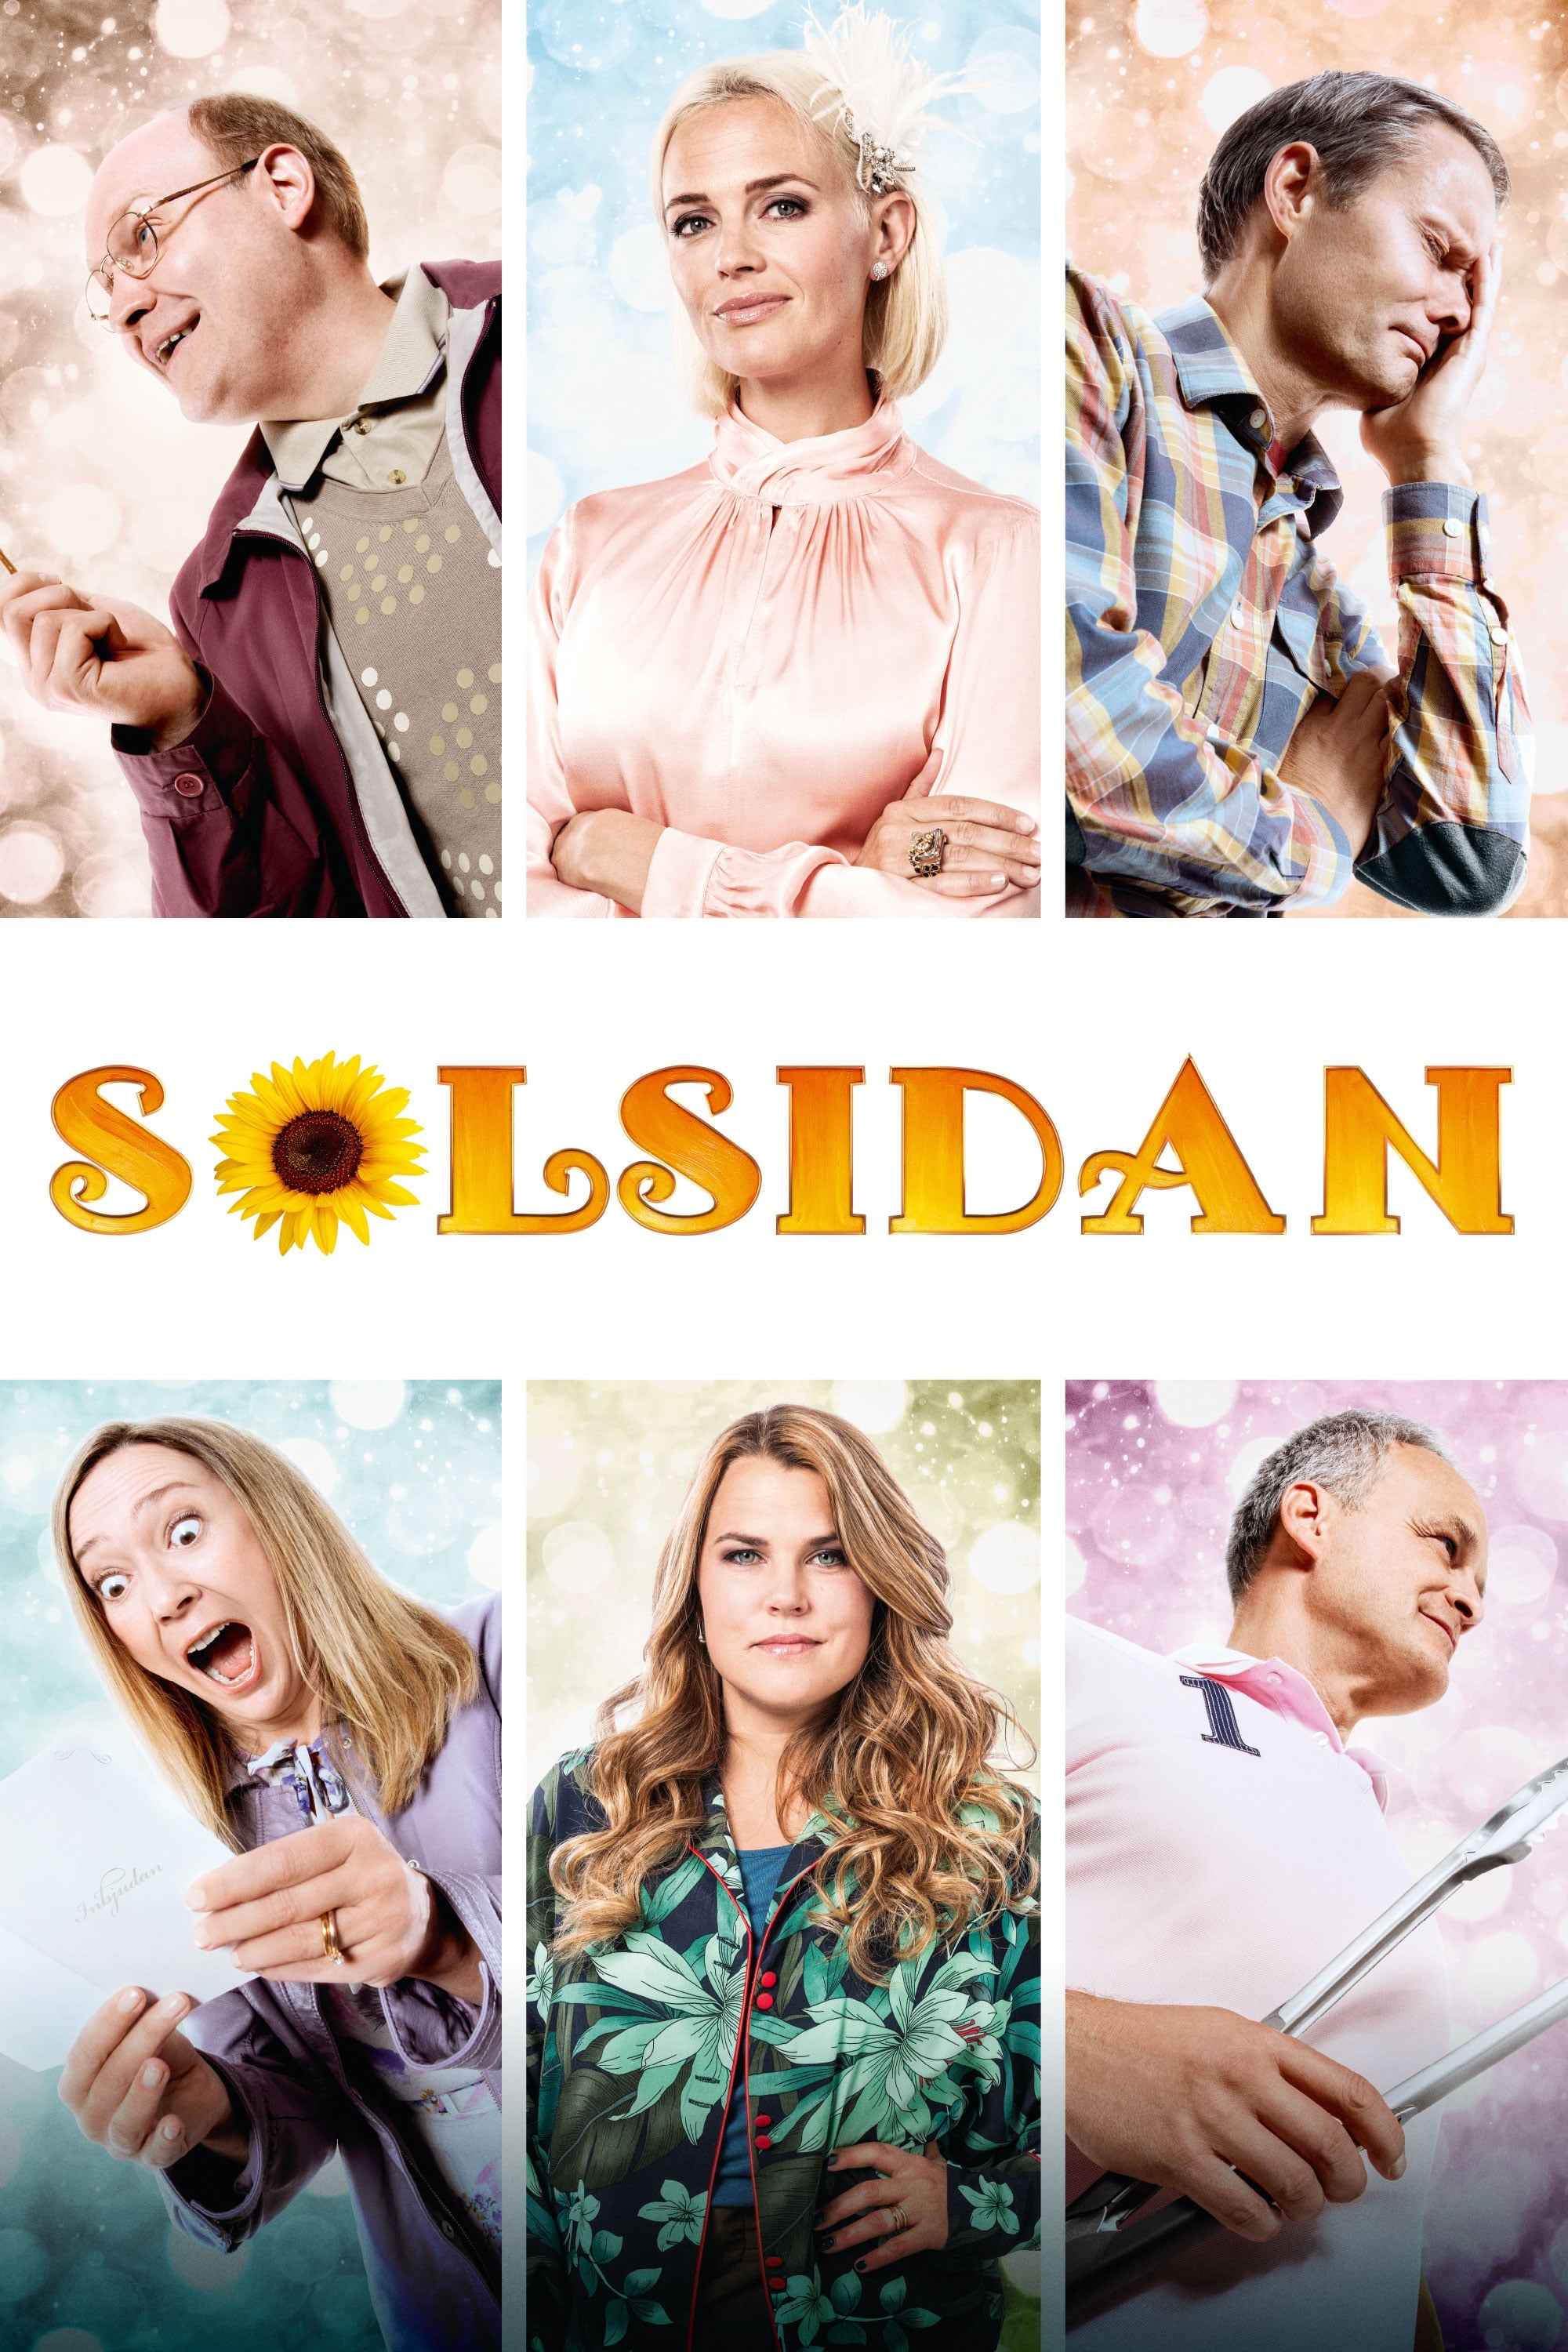 Solsidan (2017)